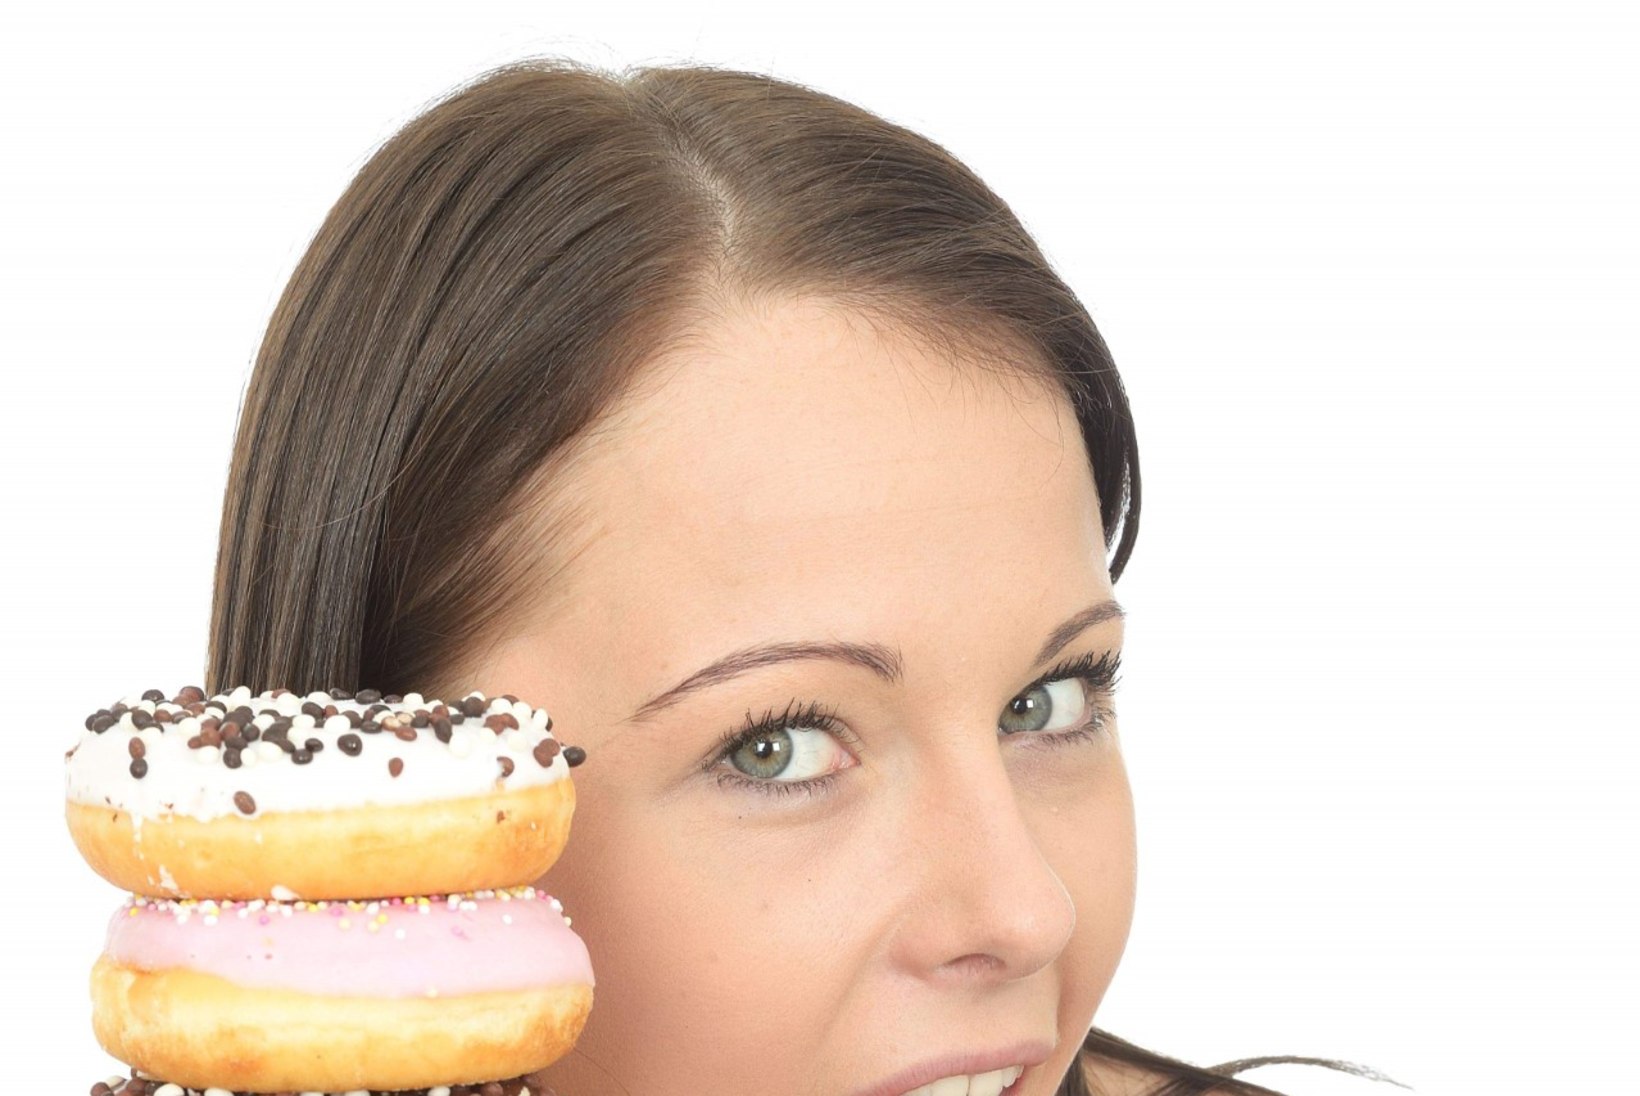 Toitumisnõustaja: suhkur on saanud istuva eluviisiga inimese vaenlaseks